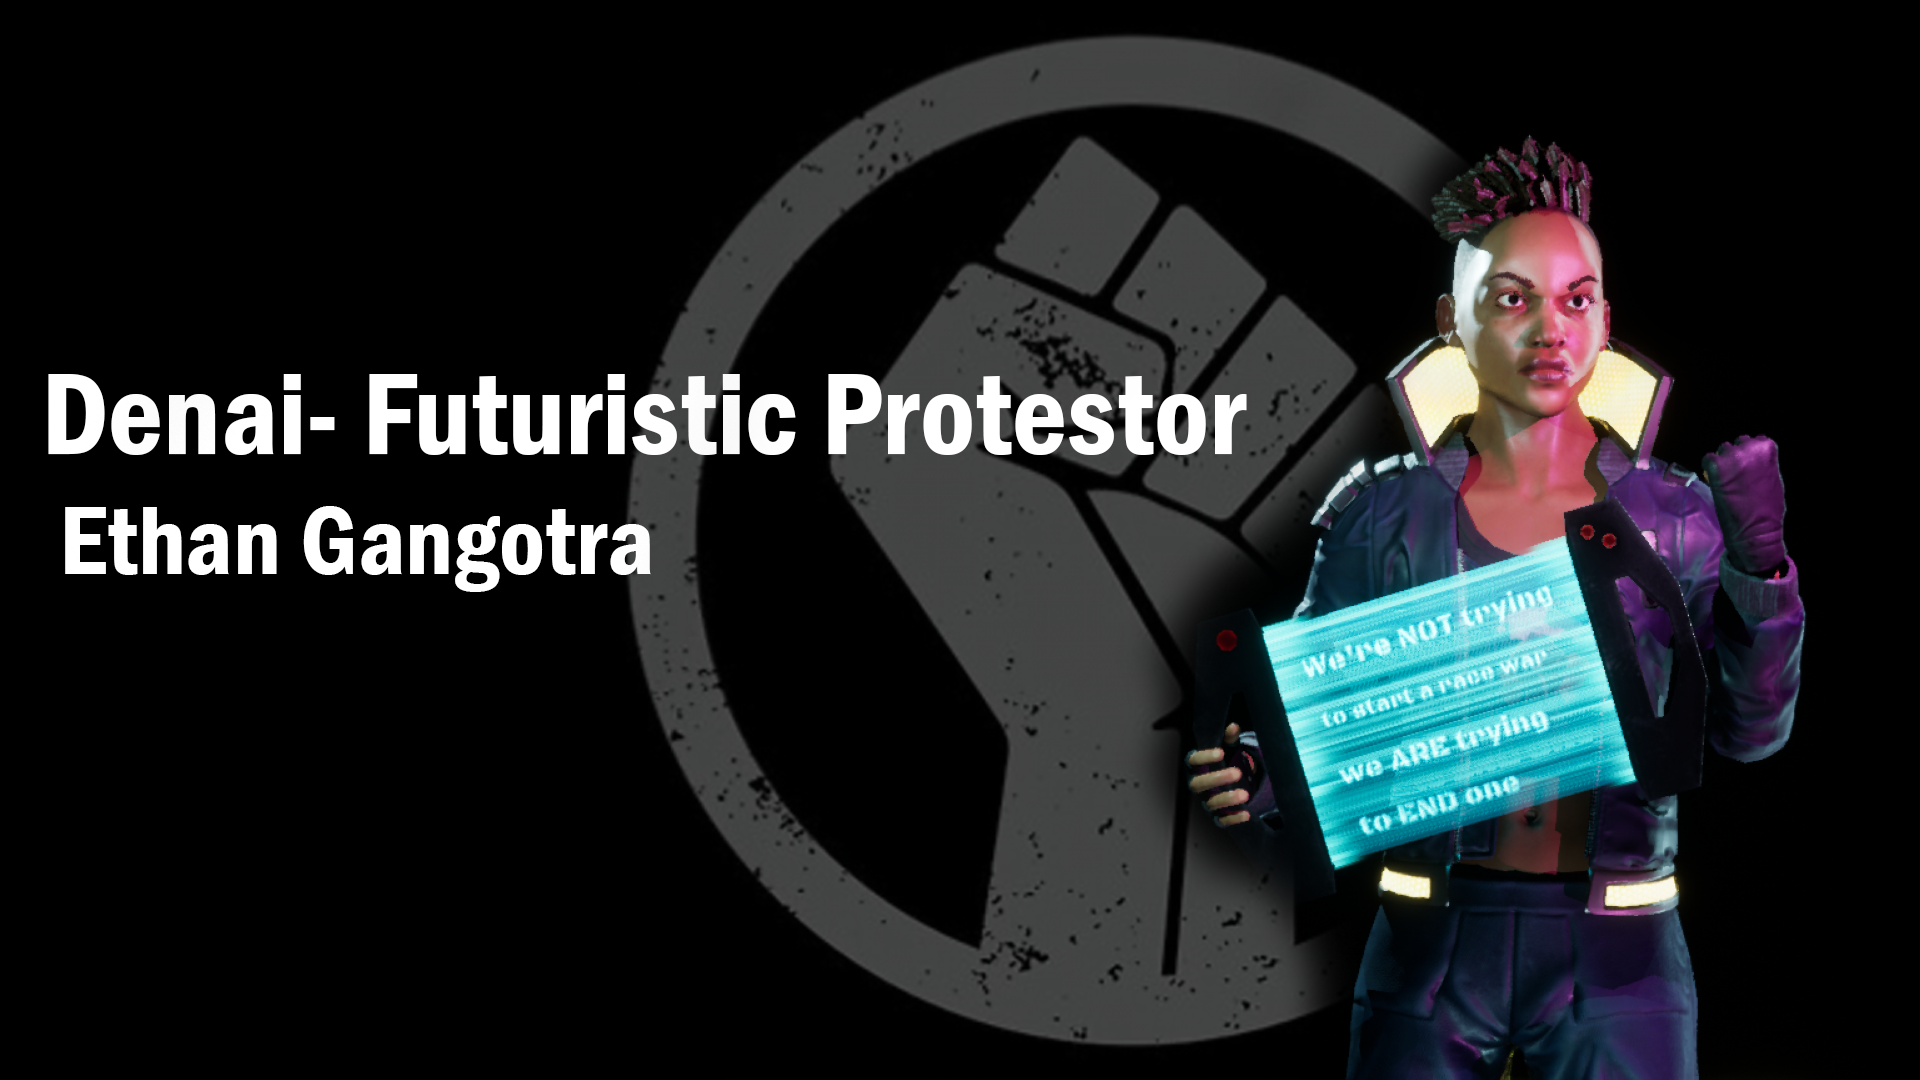 Denai- Futuristic Protester